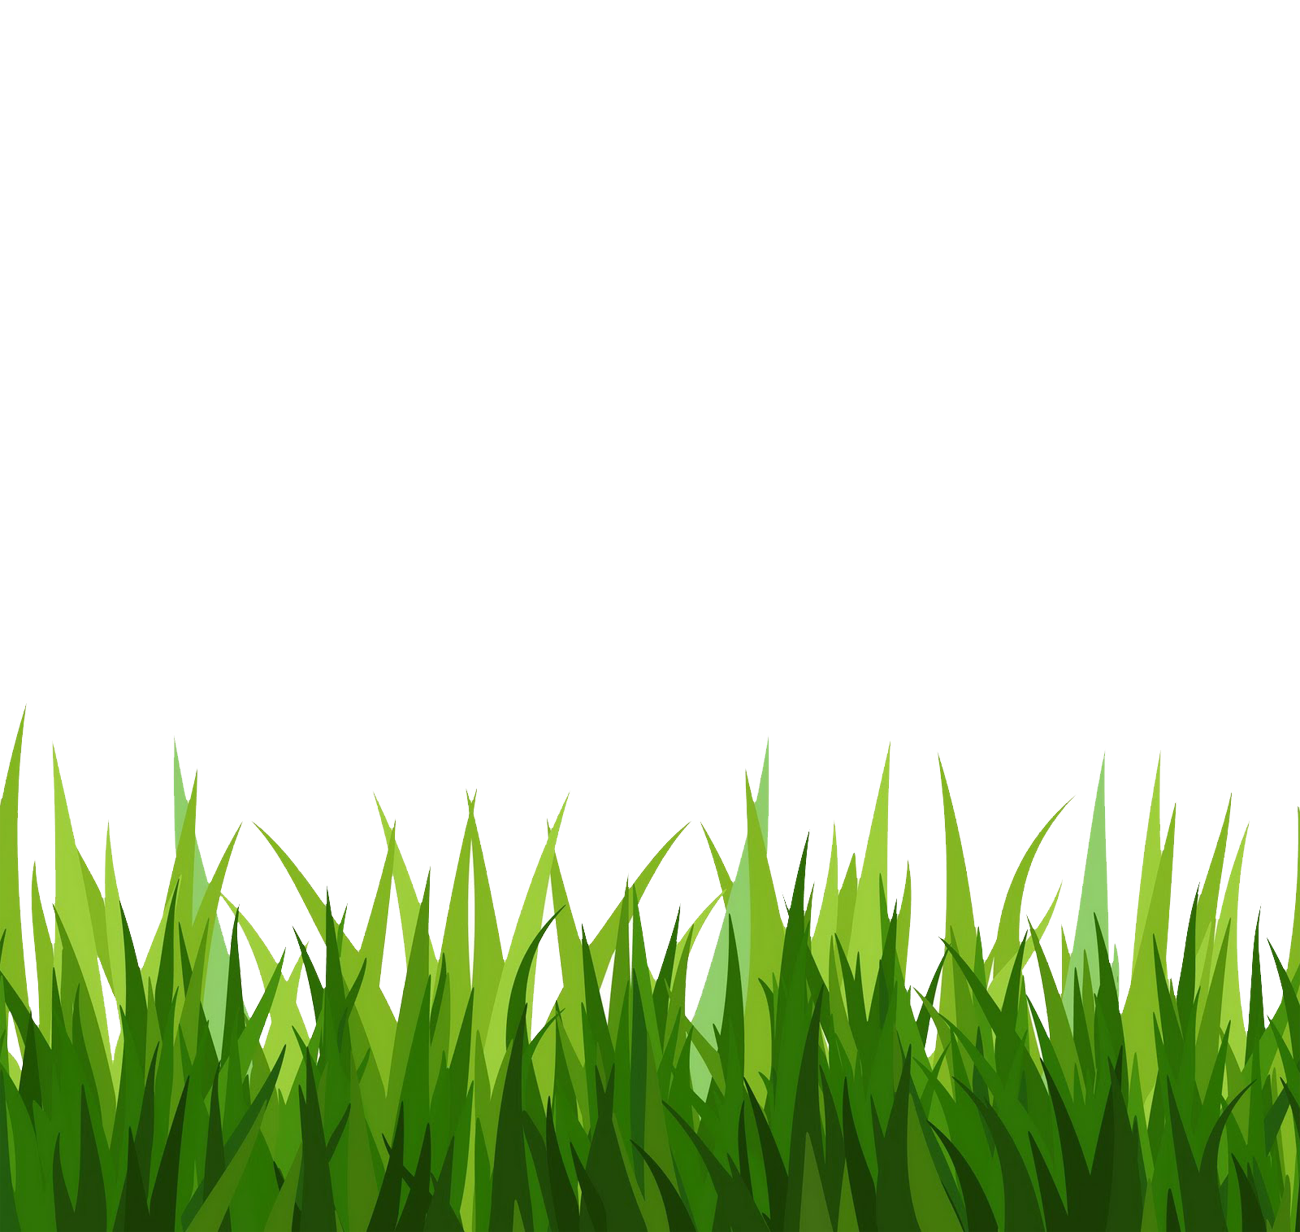 Grass clipart image green - Clip Art Grass